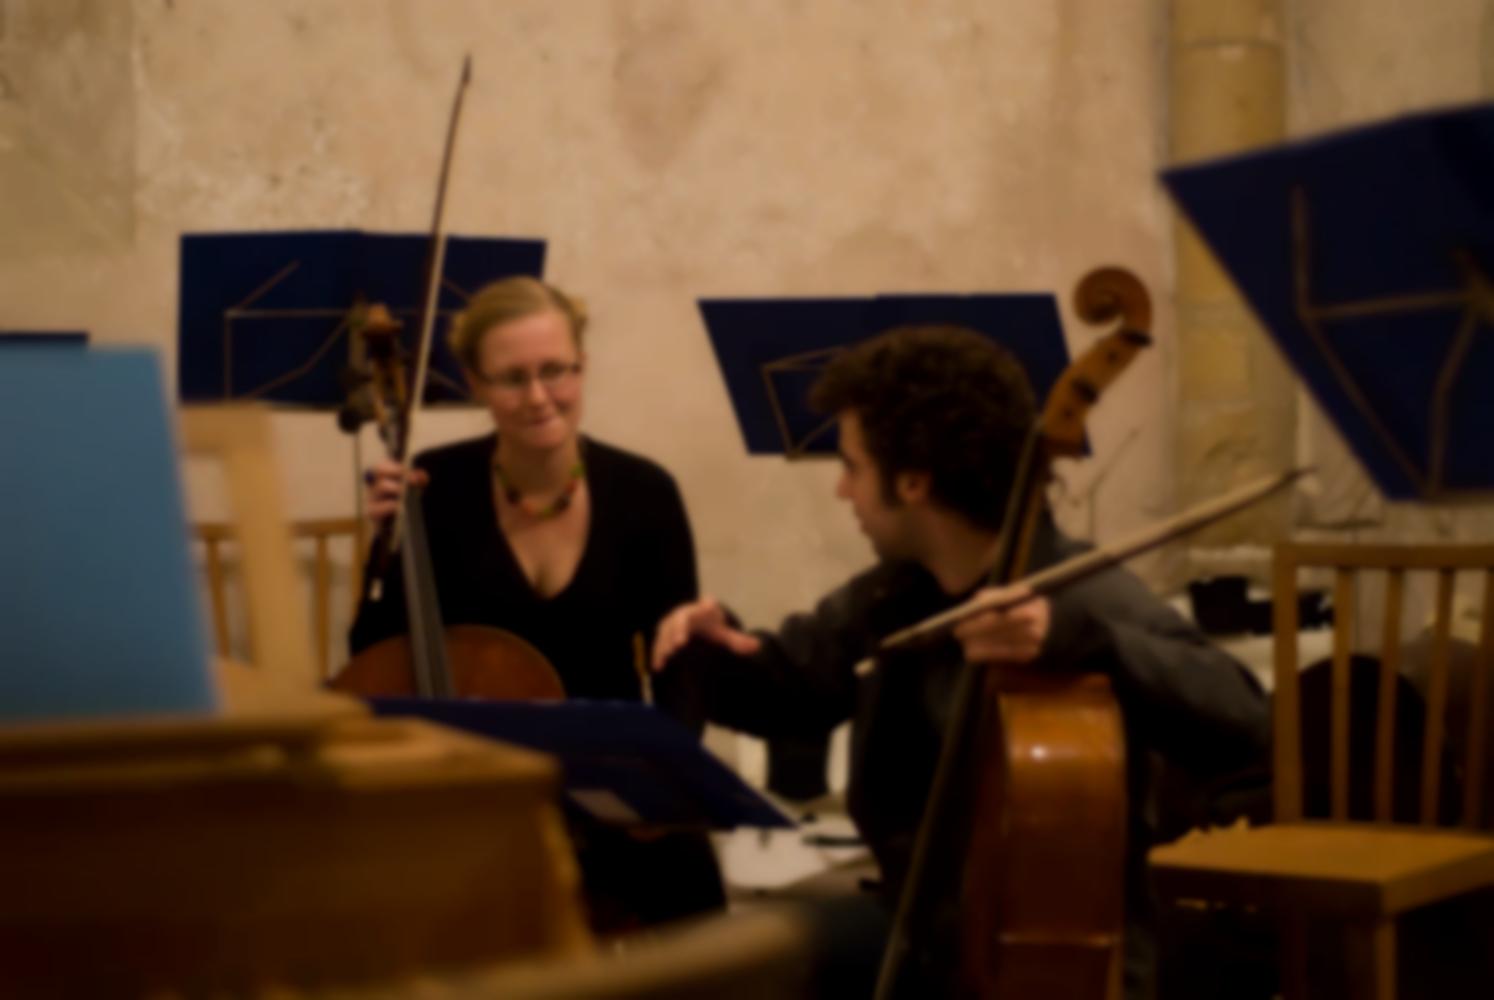 Les deux violoncellistes semblent discuter des détails techniques pendant une pause de la répétition générale dans l'église. Echternach, Luxembourg, octobre 2009.